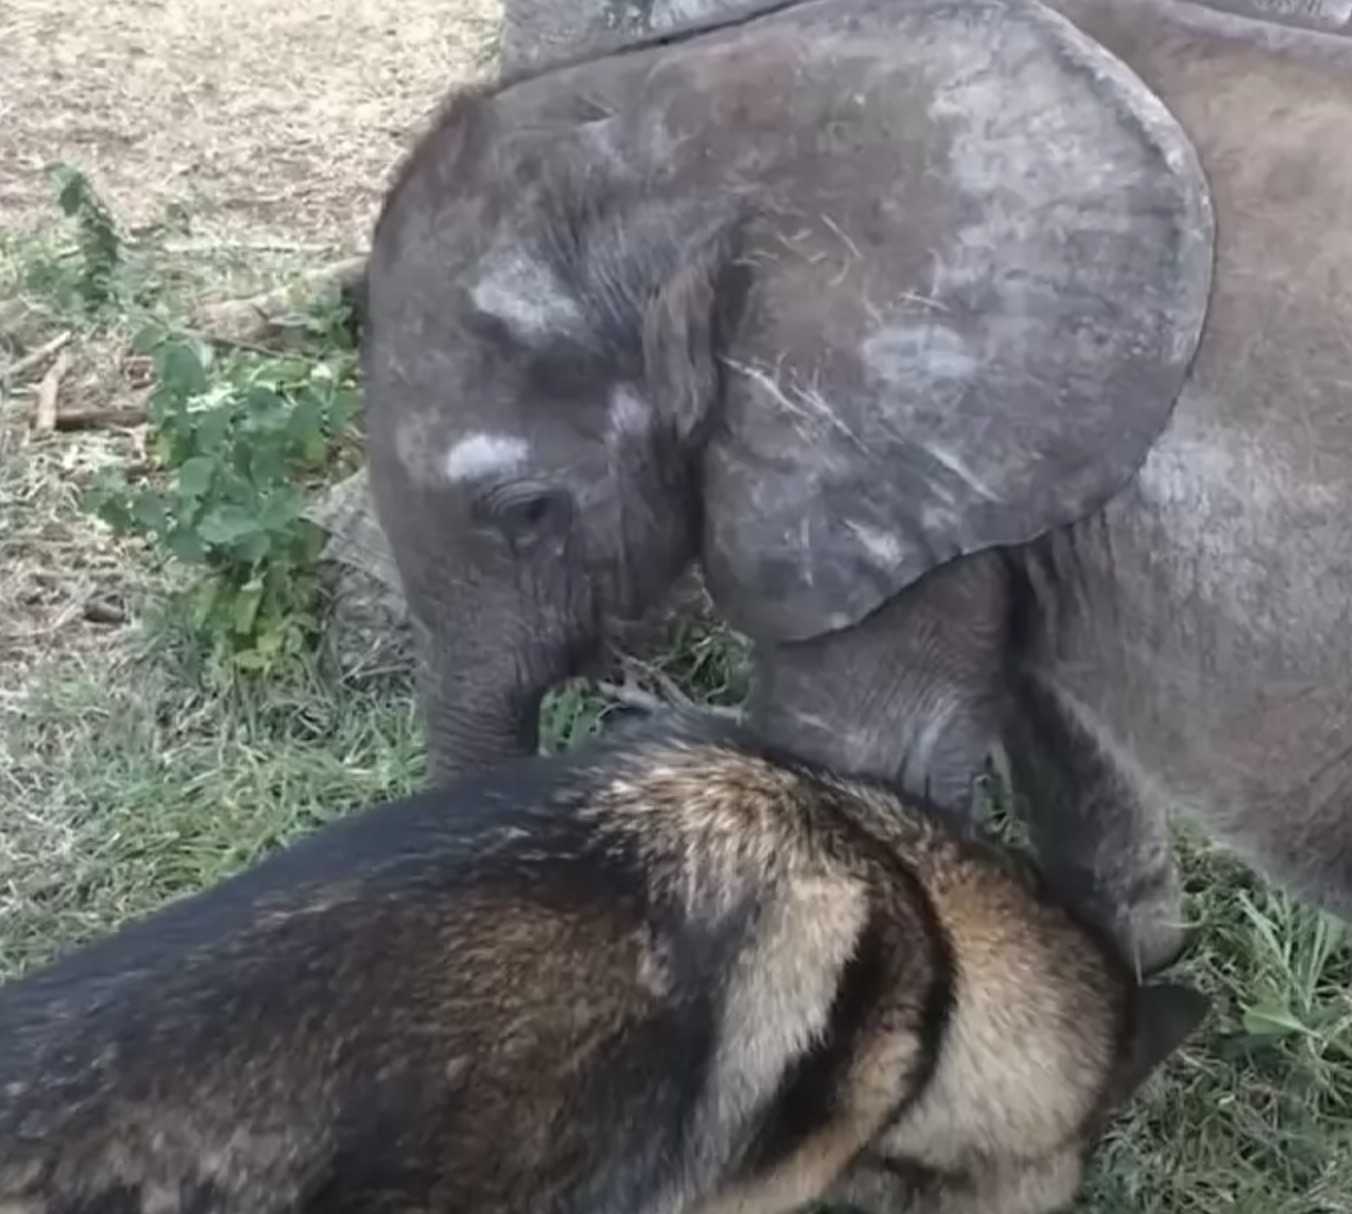 Ein verlassenes Elefantenbaby, das wegen Krankheit aus der Herde geworfen wurde, trifft auf einen Hund, der alles verändert